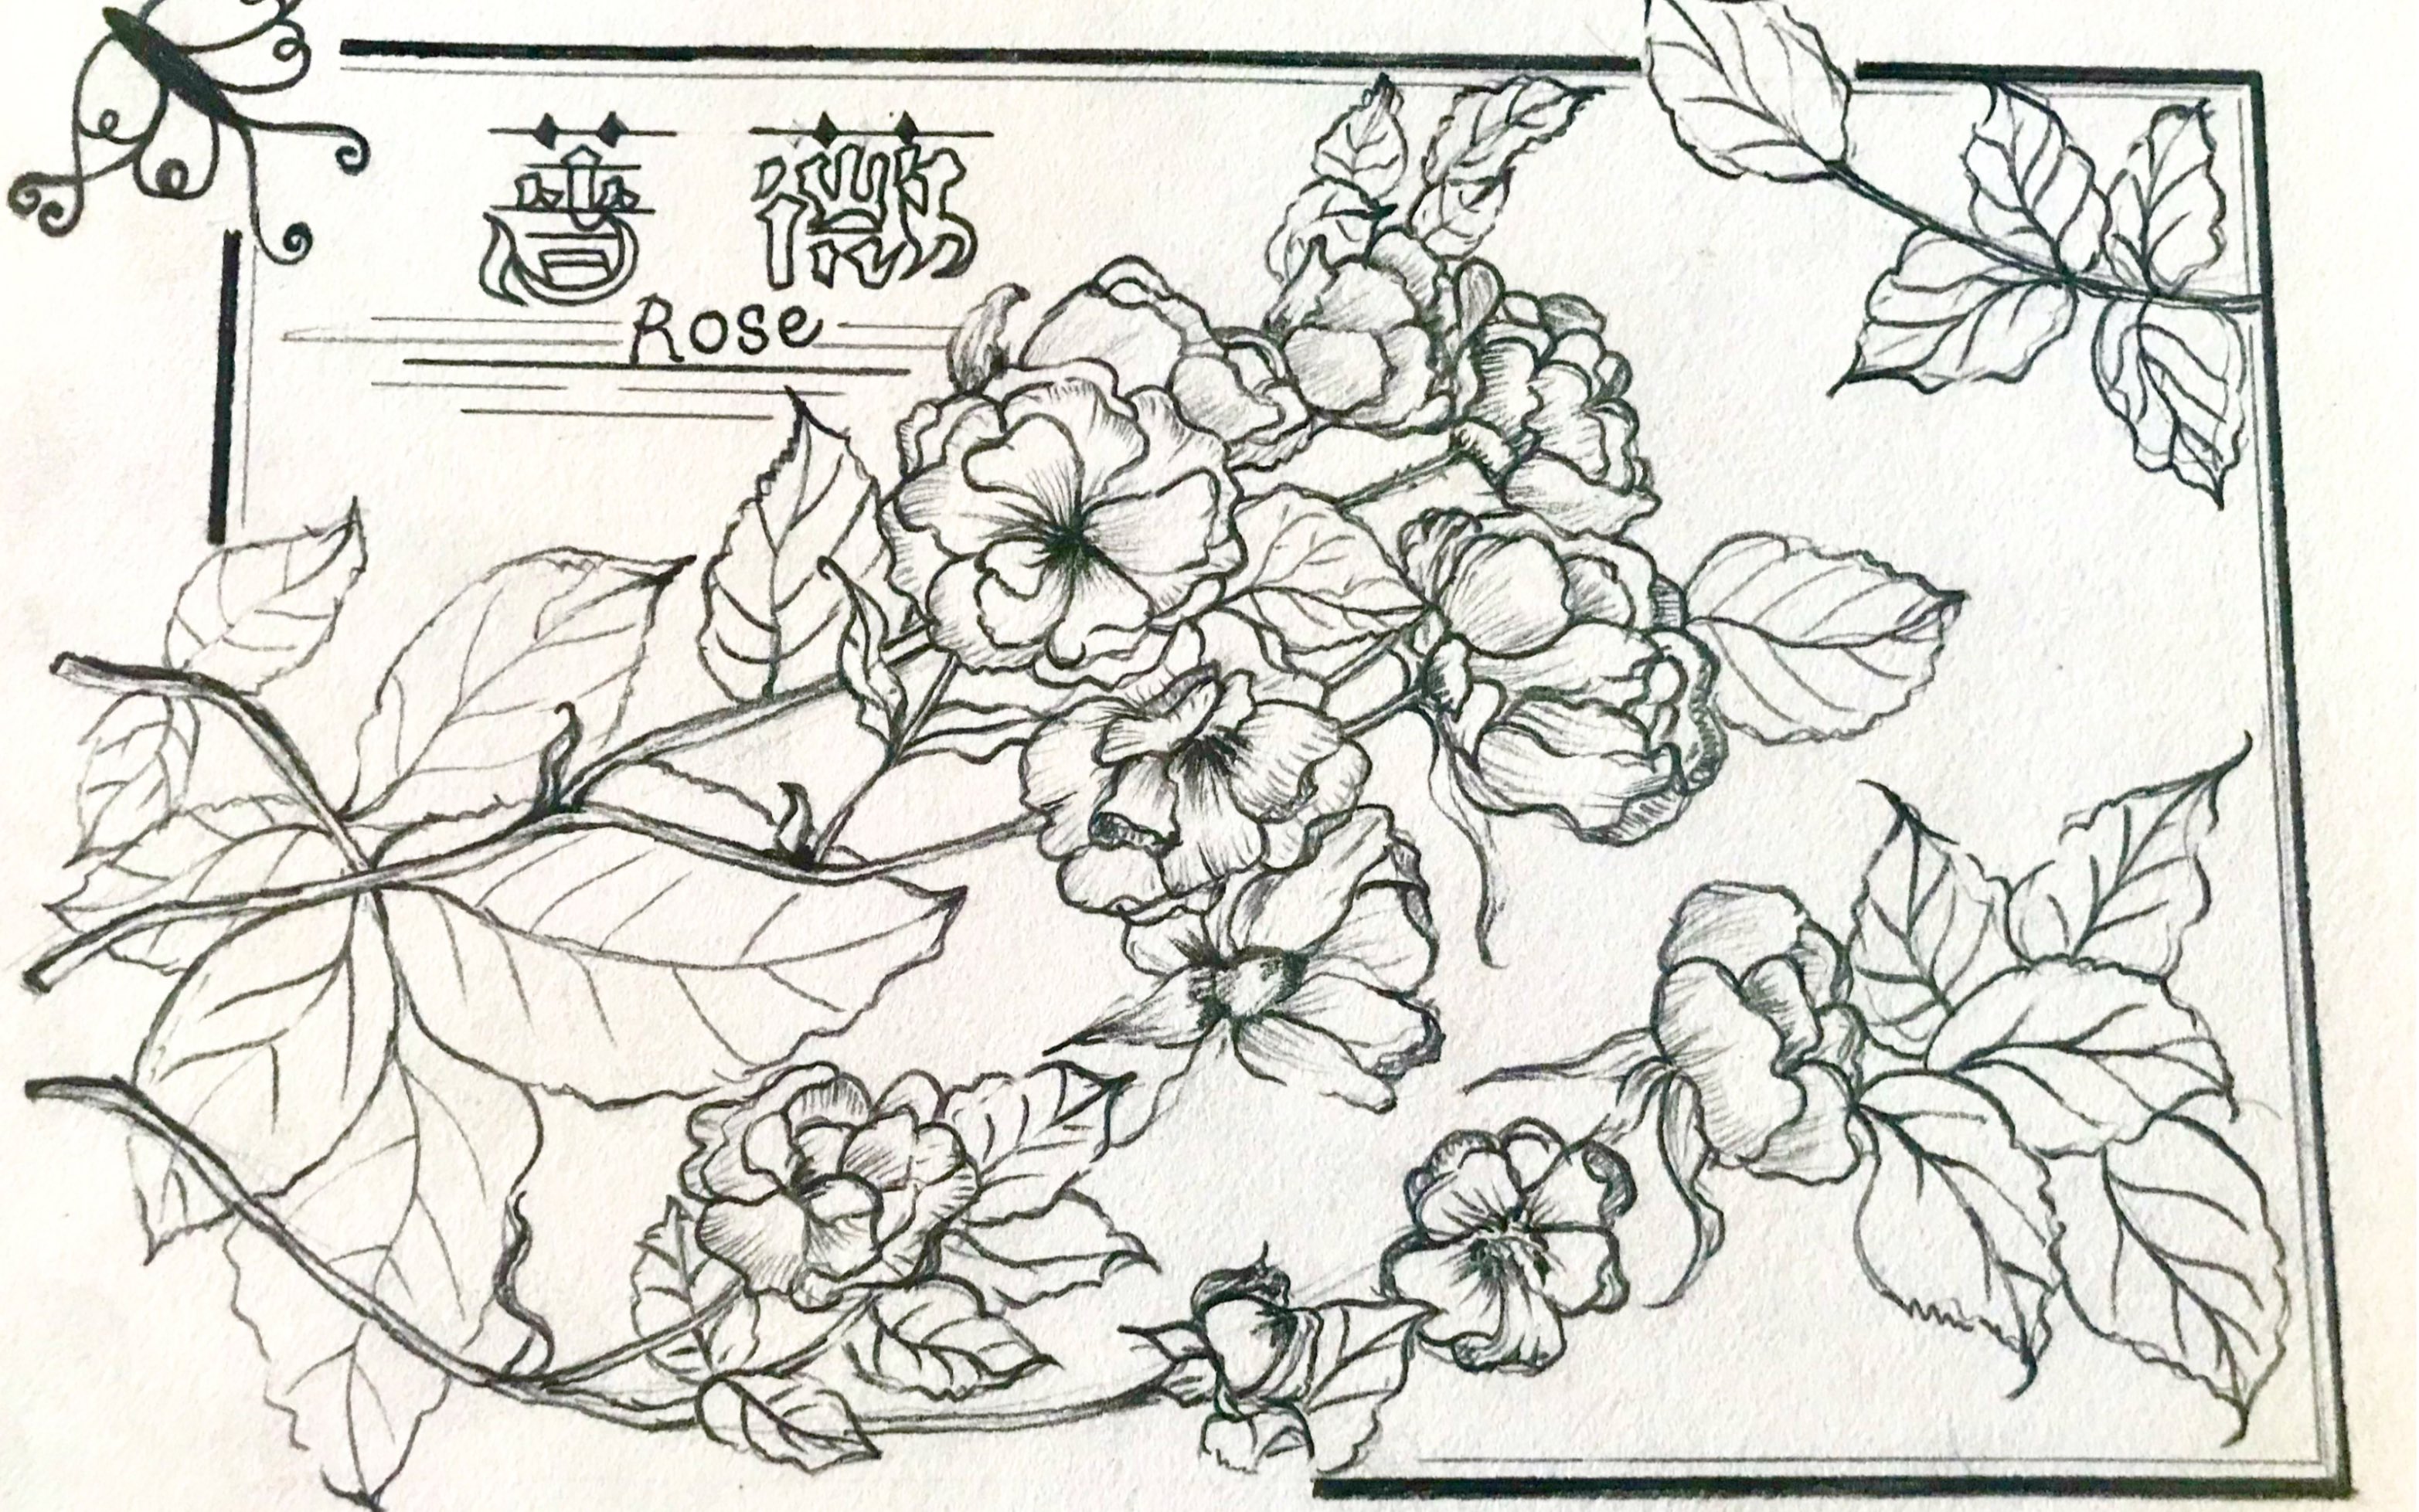 蔷薇花的简笔画颜色图片